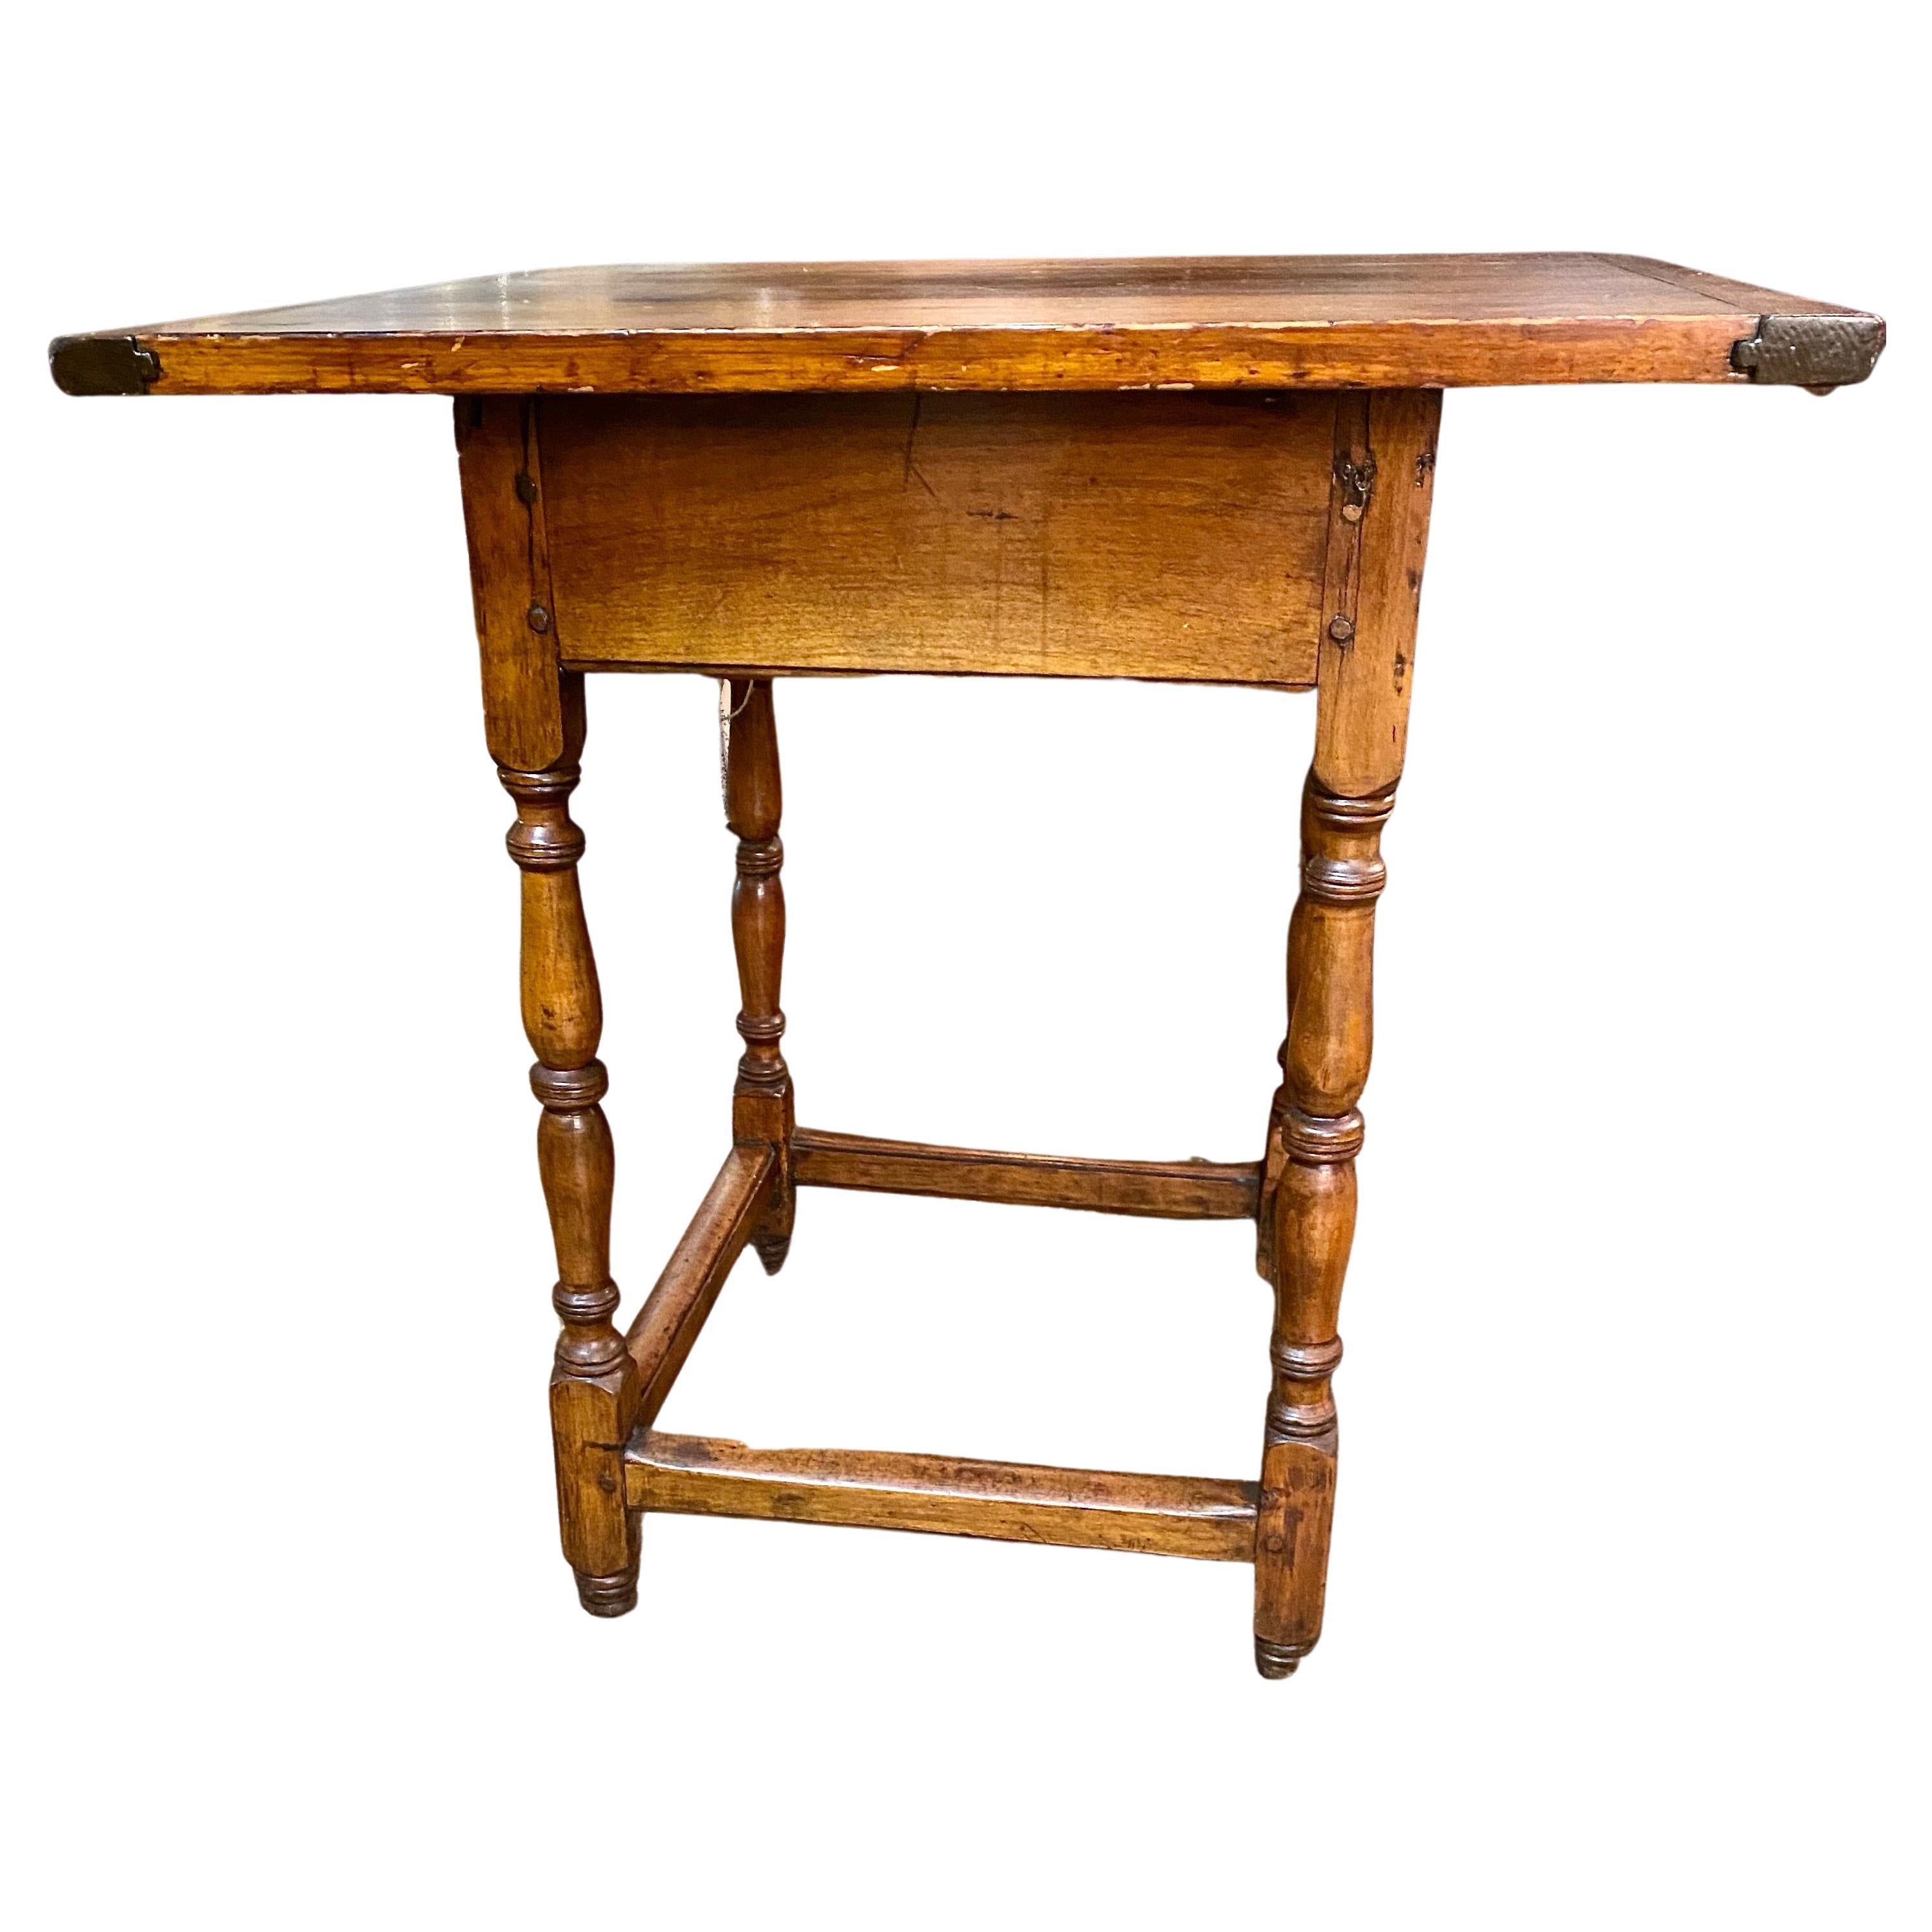 Amerikanischer Tavern-Tisch aus dem 18. Jahrhundert